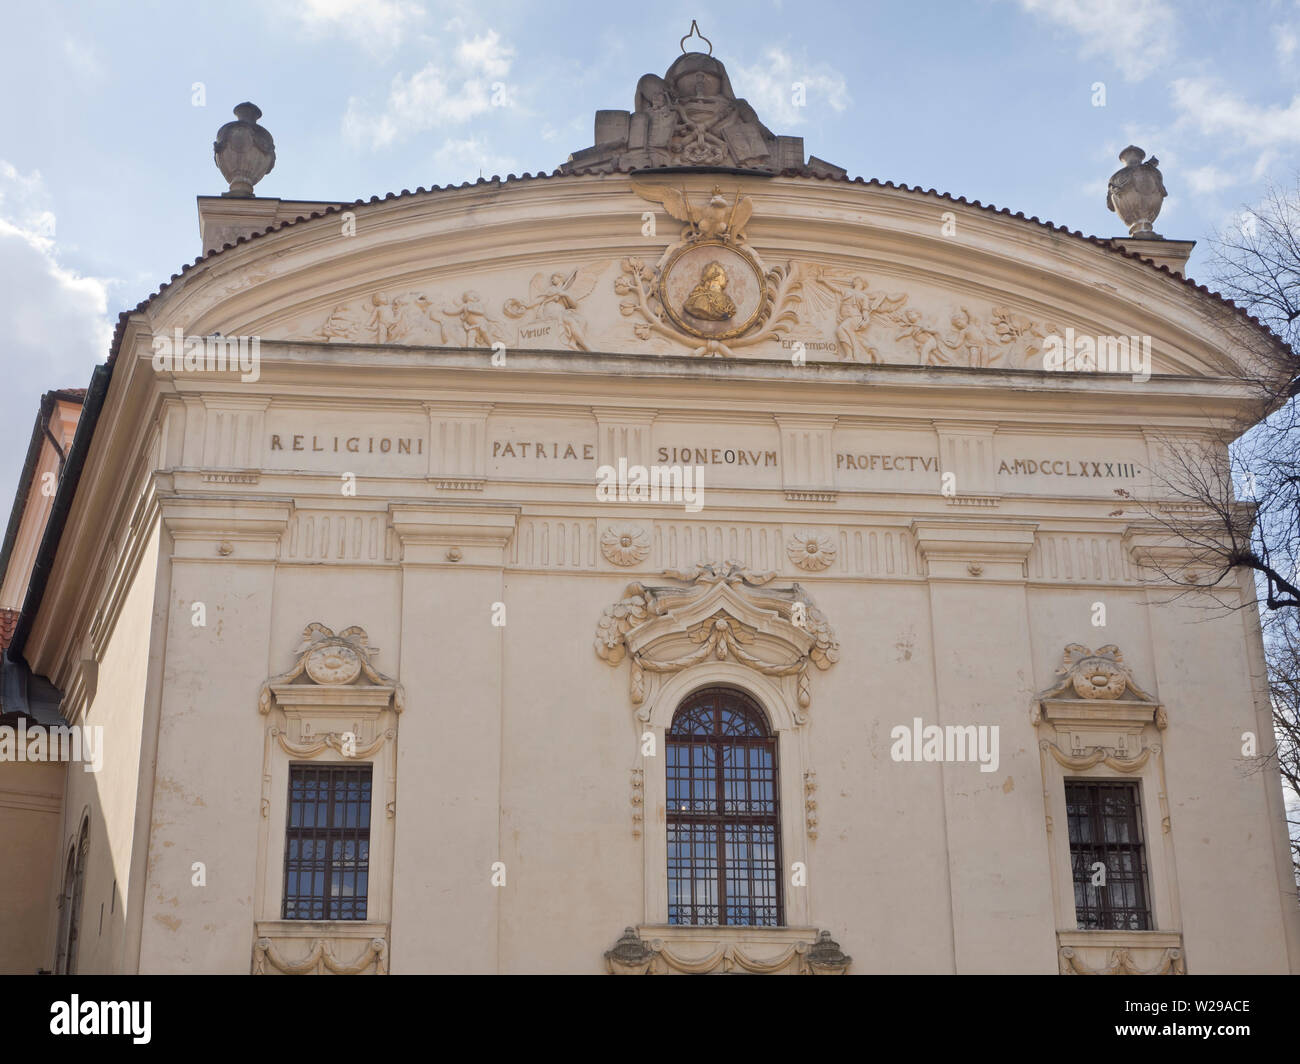 Le monastère de Strahov baroque est une attraction touristique majeure à Prague, République tchèque, façade de la bibliothèque ici Banque D'Images